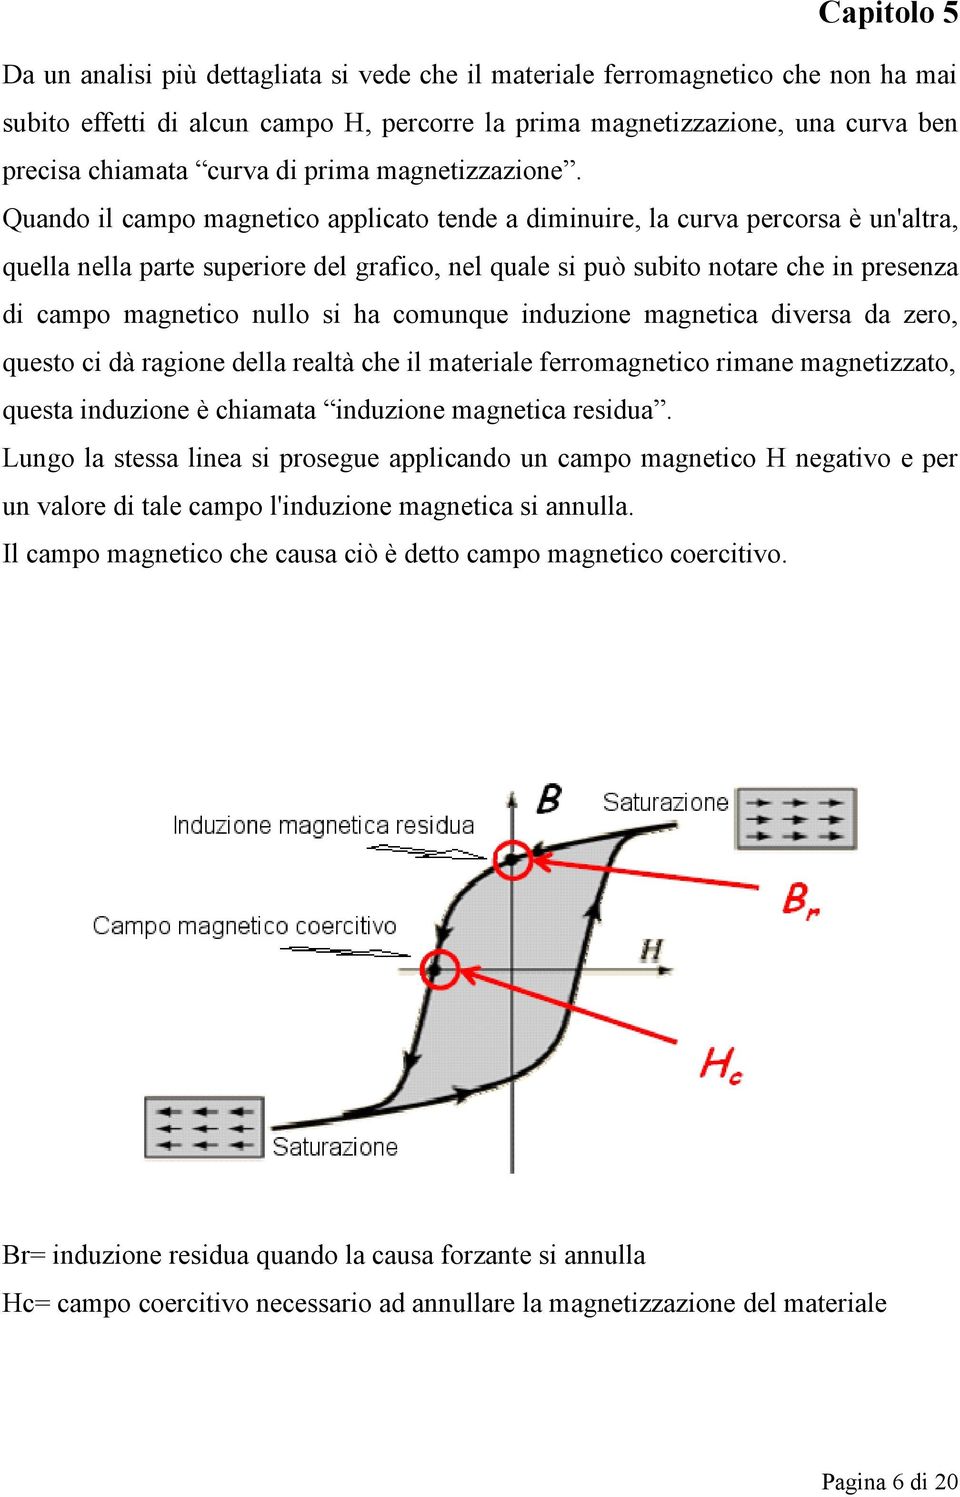 Quando il campo magnetico applicato tende a diminuire, la curva percorsa è un'altra, quella nella parte superiore del grafico, nel quale si può subito notare che in presenza di campo magnetico nullo